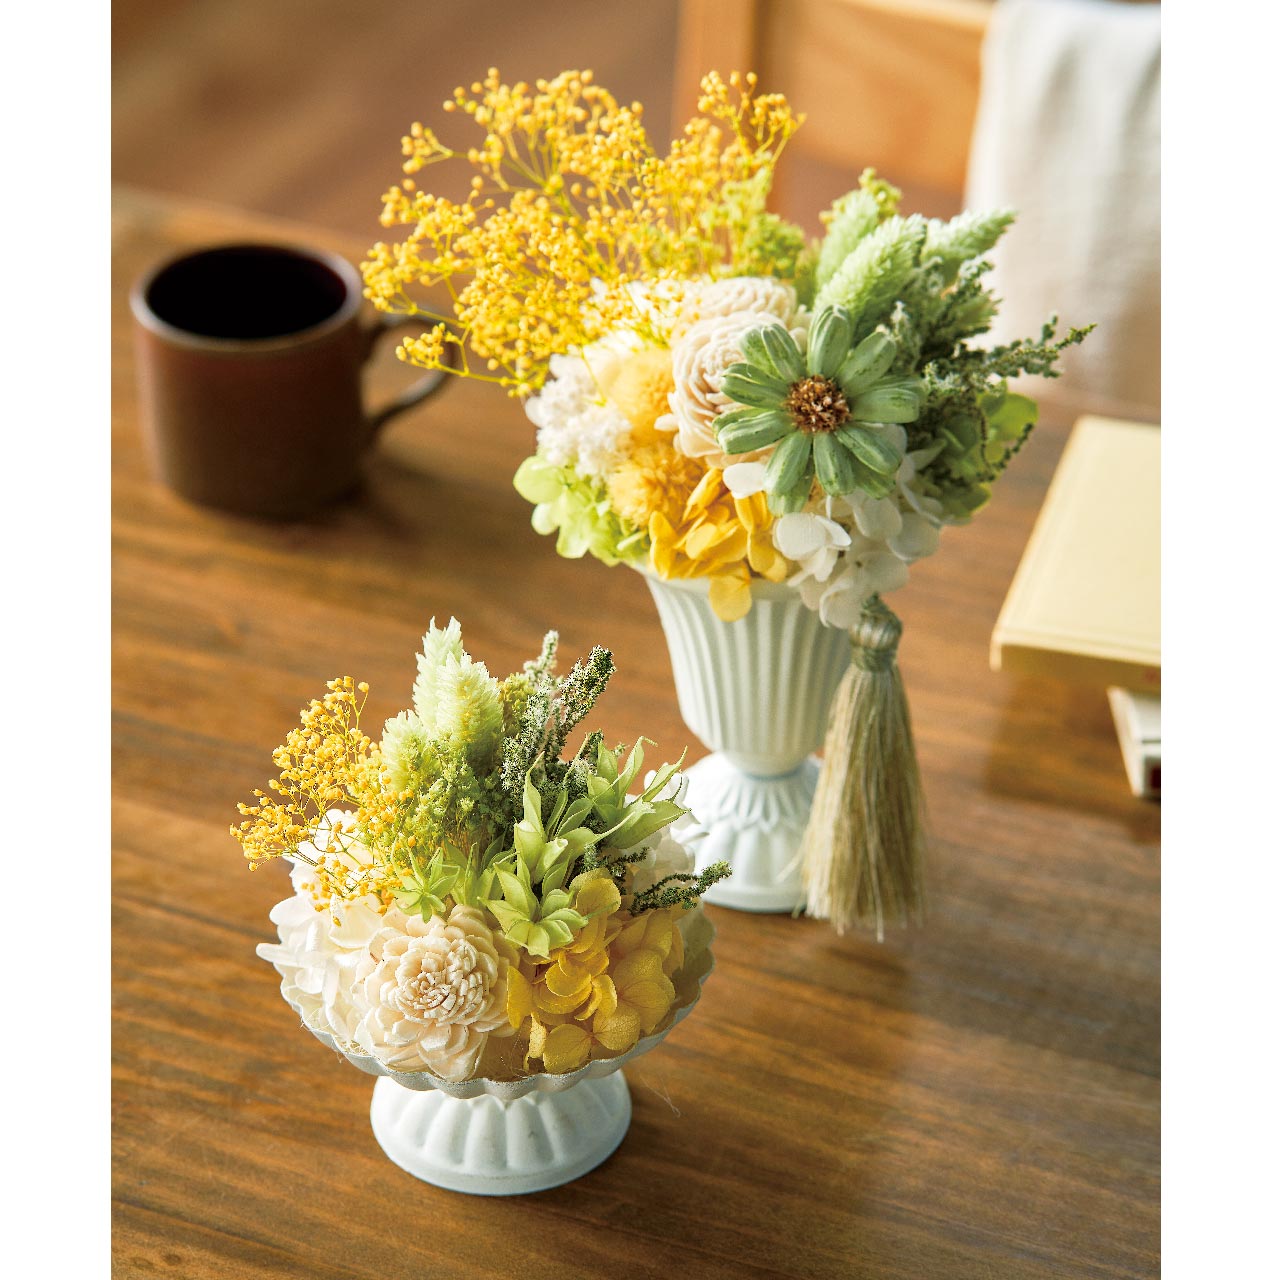 マイフラ】 通販/アンティークブリキミニコンポート10 ホワイト 花器 KA540010-00W ブリキ(ホワイト):  花器・花瓶・フレーム・天然素材ベース/全国にMAGIQ、花器、花資材などをお届けします。